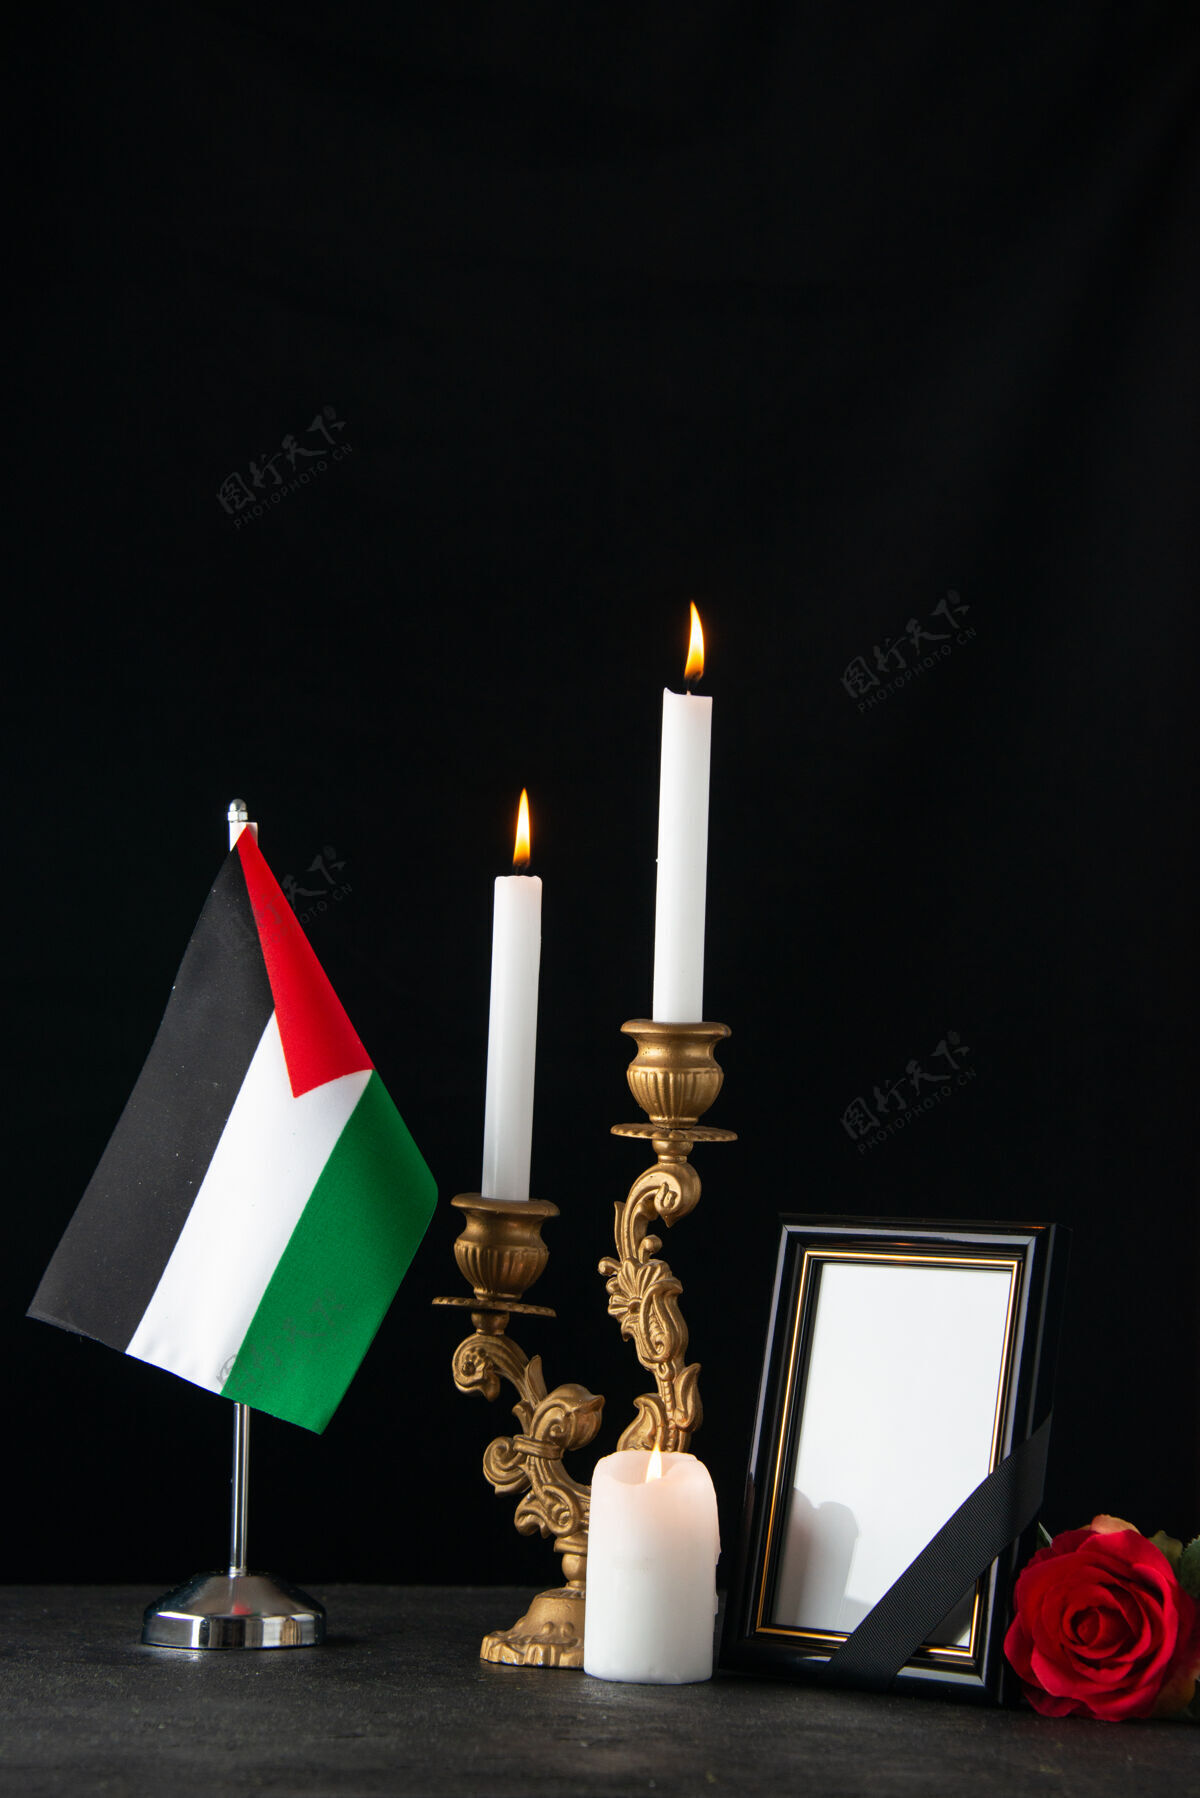 葬礼前视图燃烧蜡烛与图片框在黑暗的表面宗教视图火